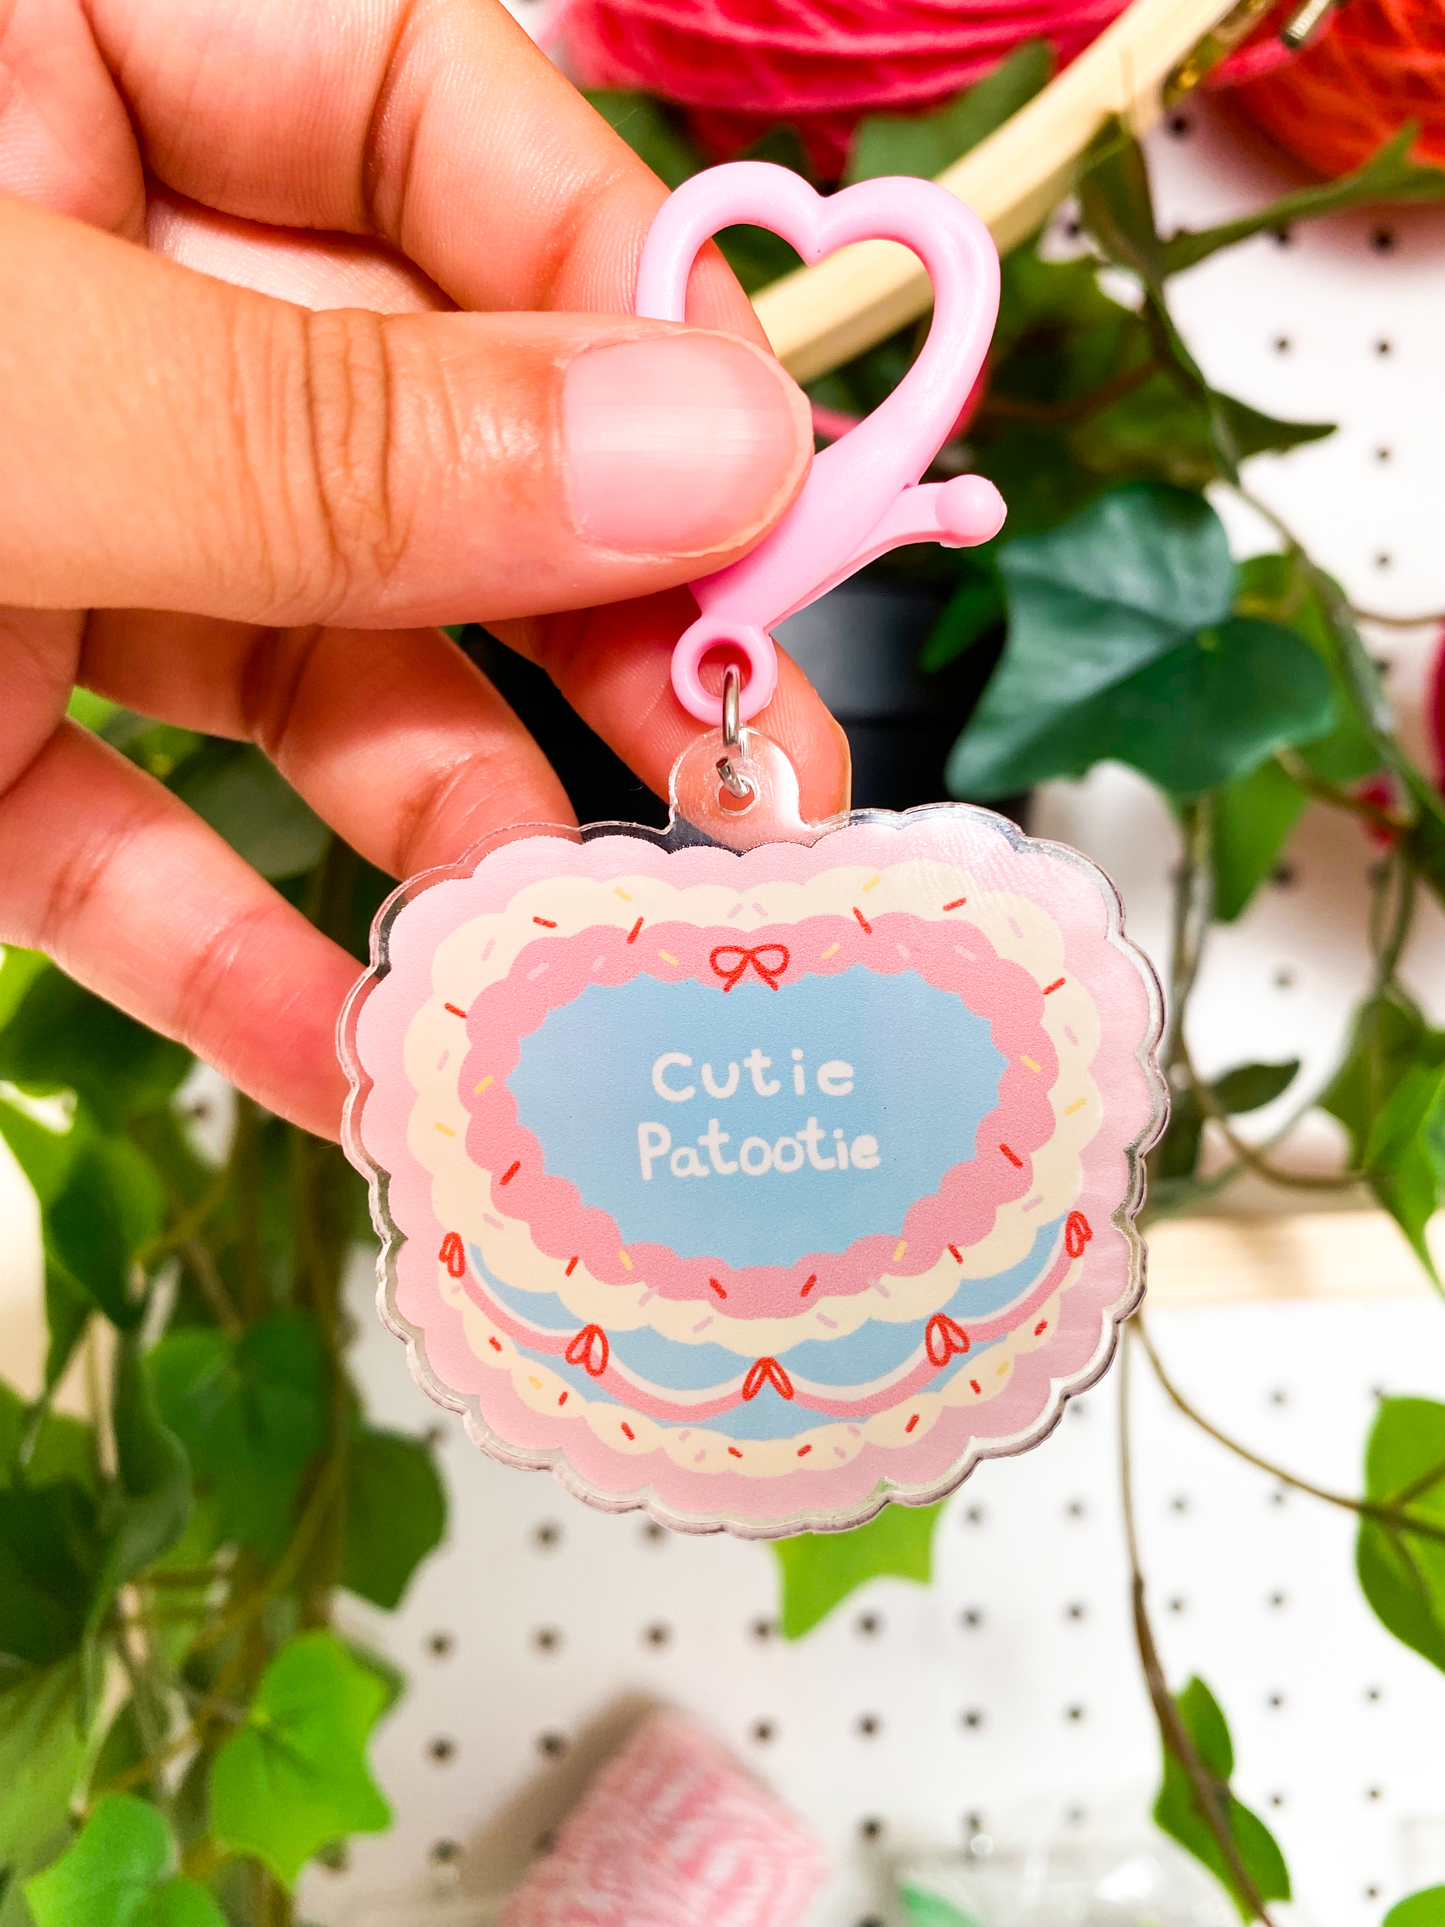 Cutie Patootie Cake Keychain